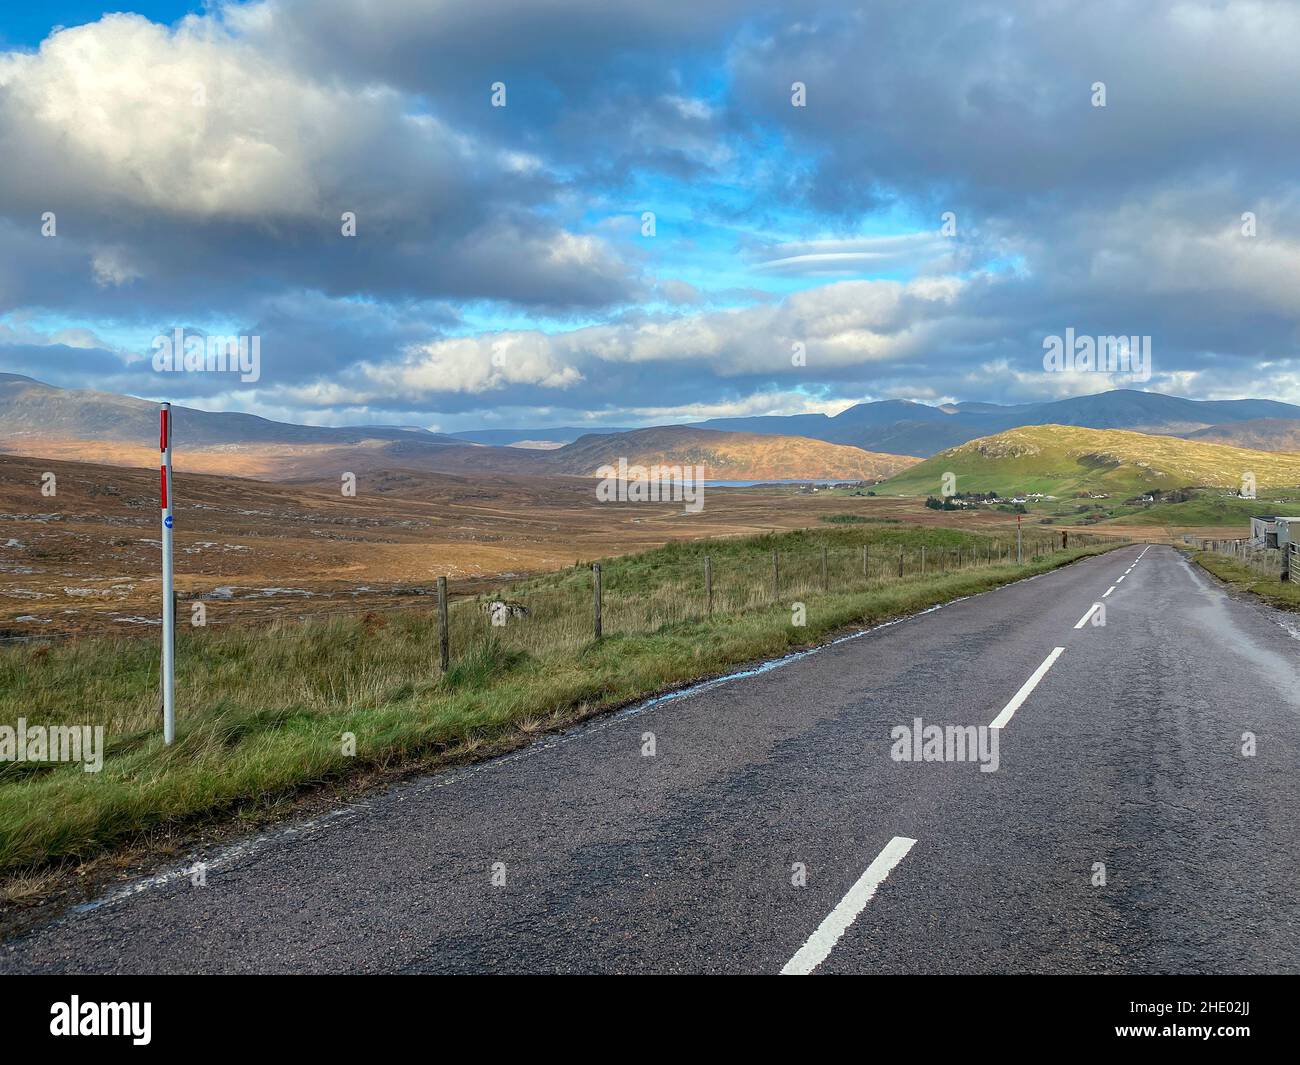 La strada da Ullapool a Drumrunie (A835) con le montagne di Assynt Coigach in lontananza. Questa strada fa parte del percorso panoramico NC500. Foto Stock